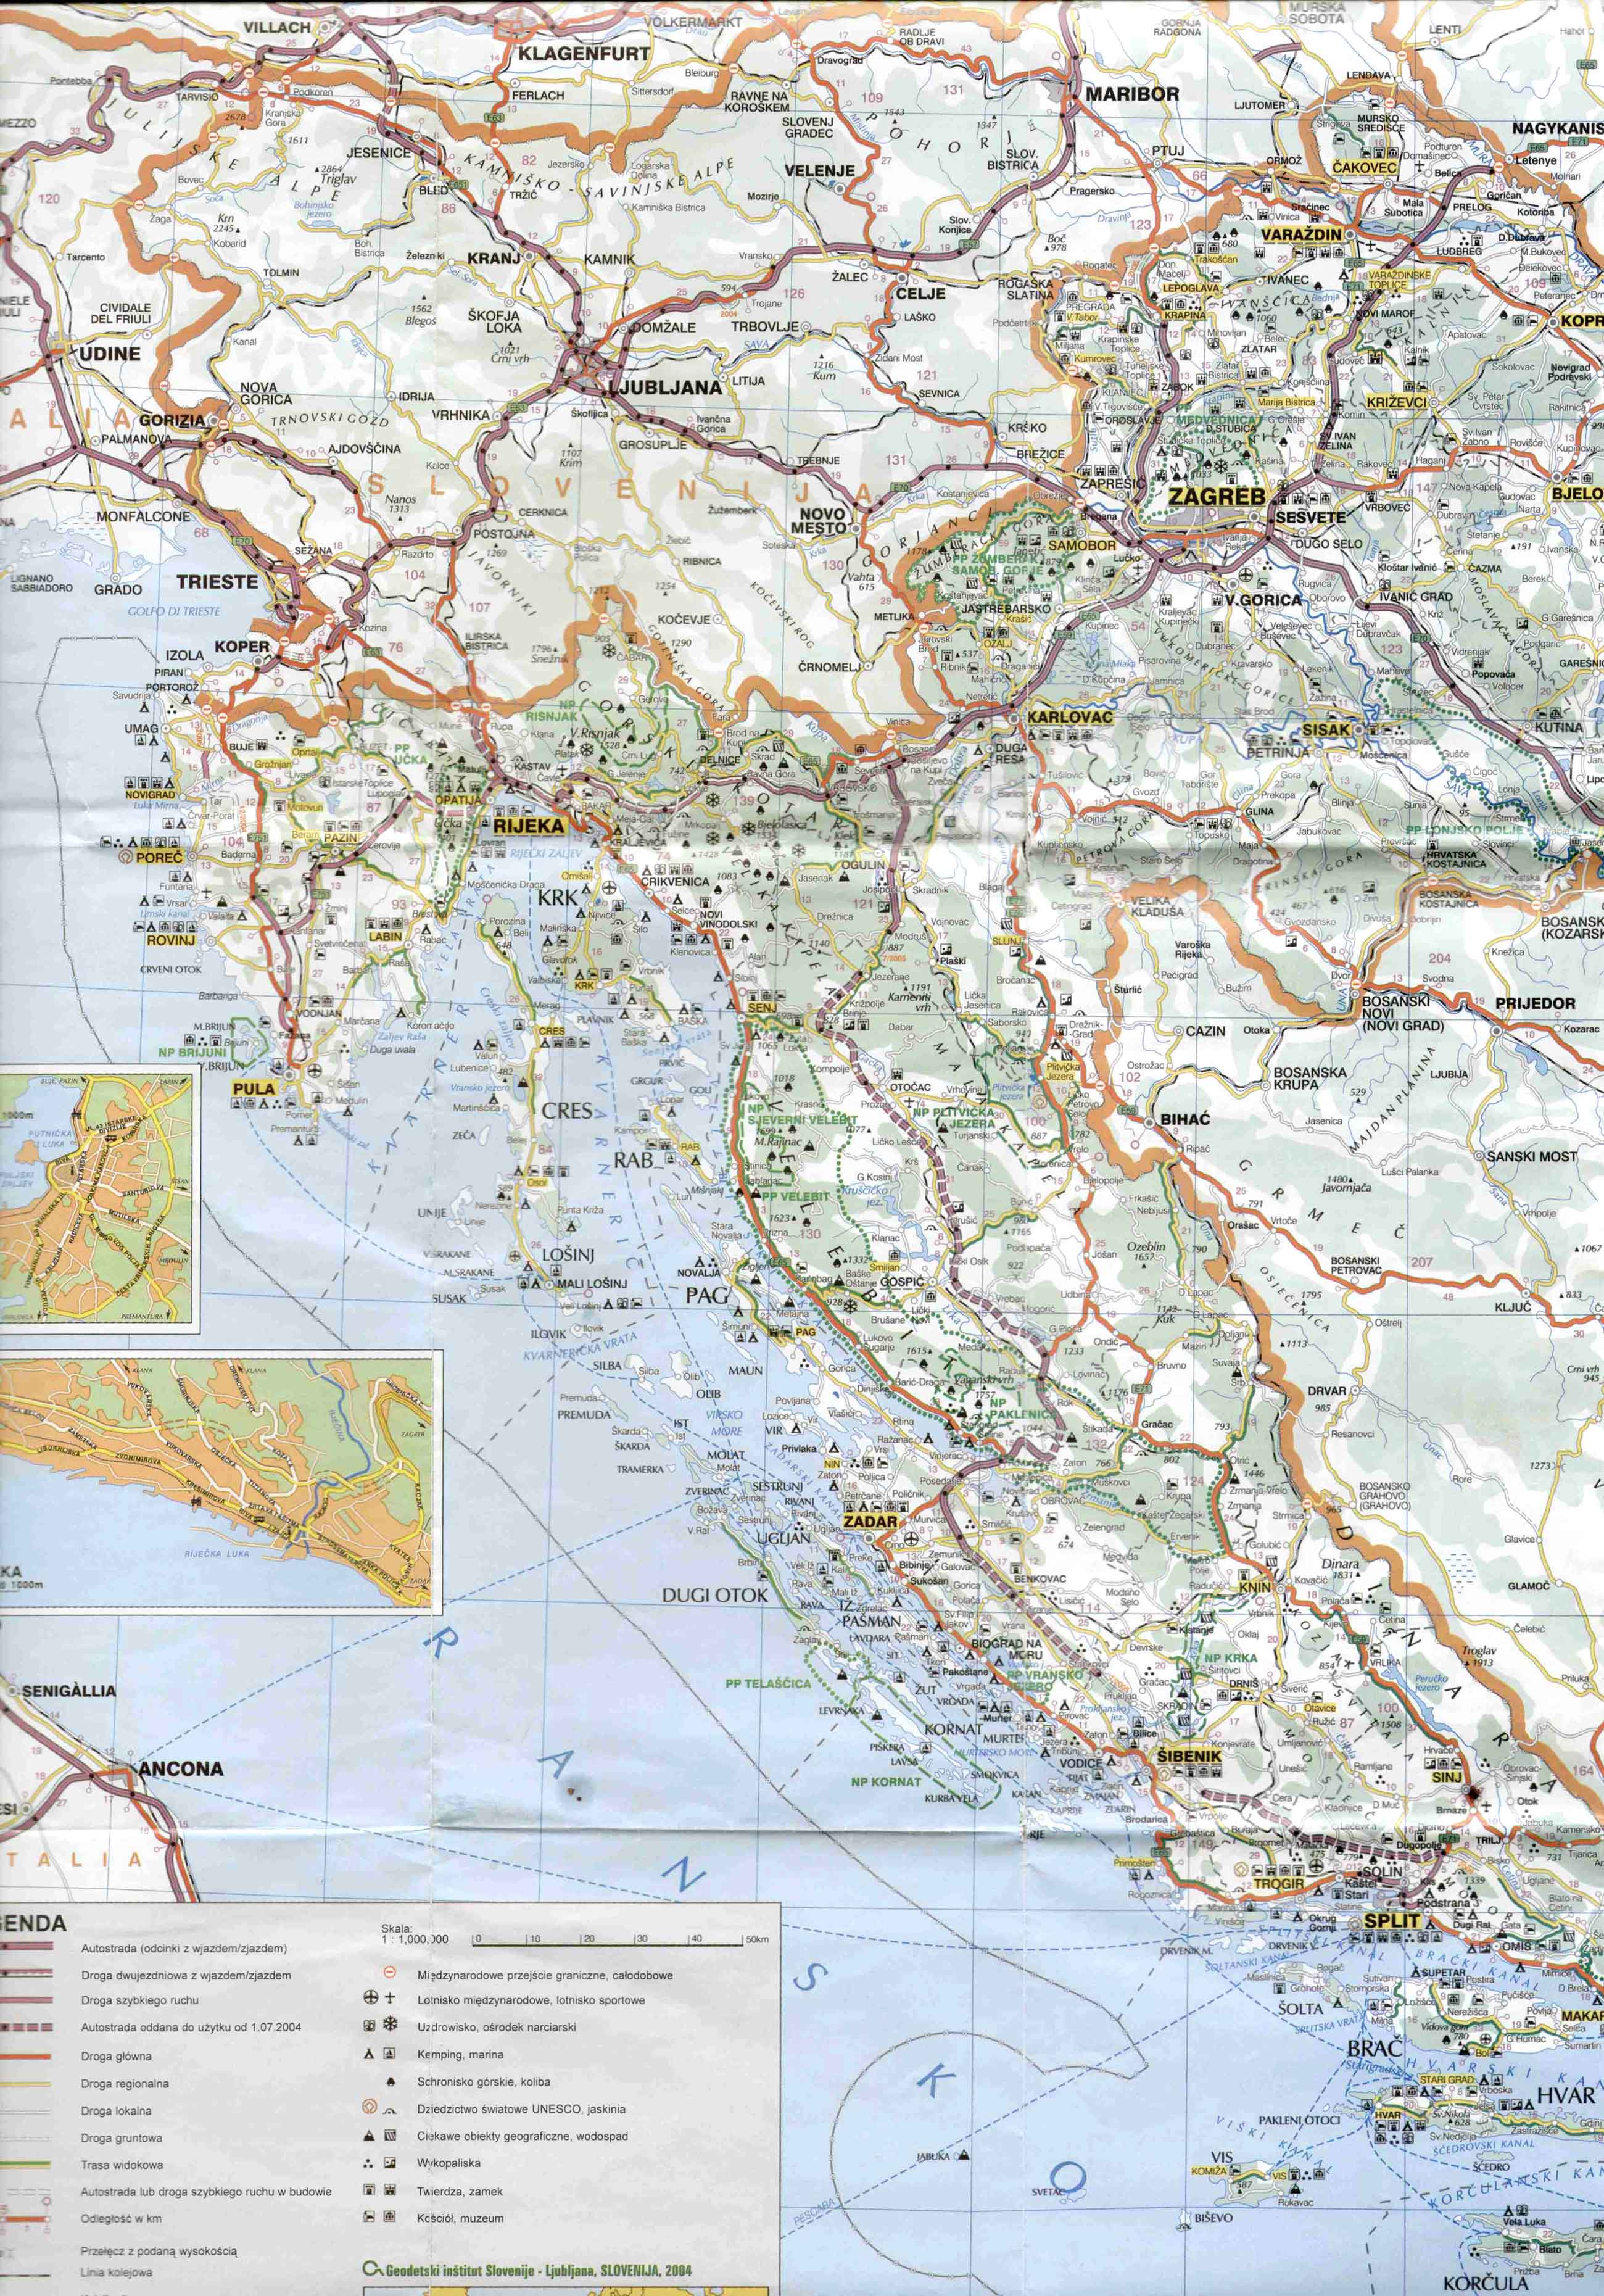 magyarország horvátország térkép Új autópályaszakaszok és díjak Horvátországban 2004 magyarország horvátország térkép